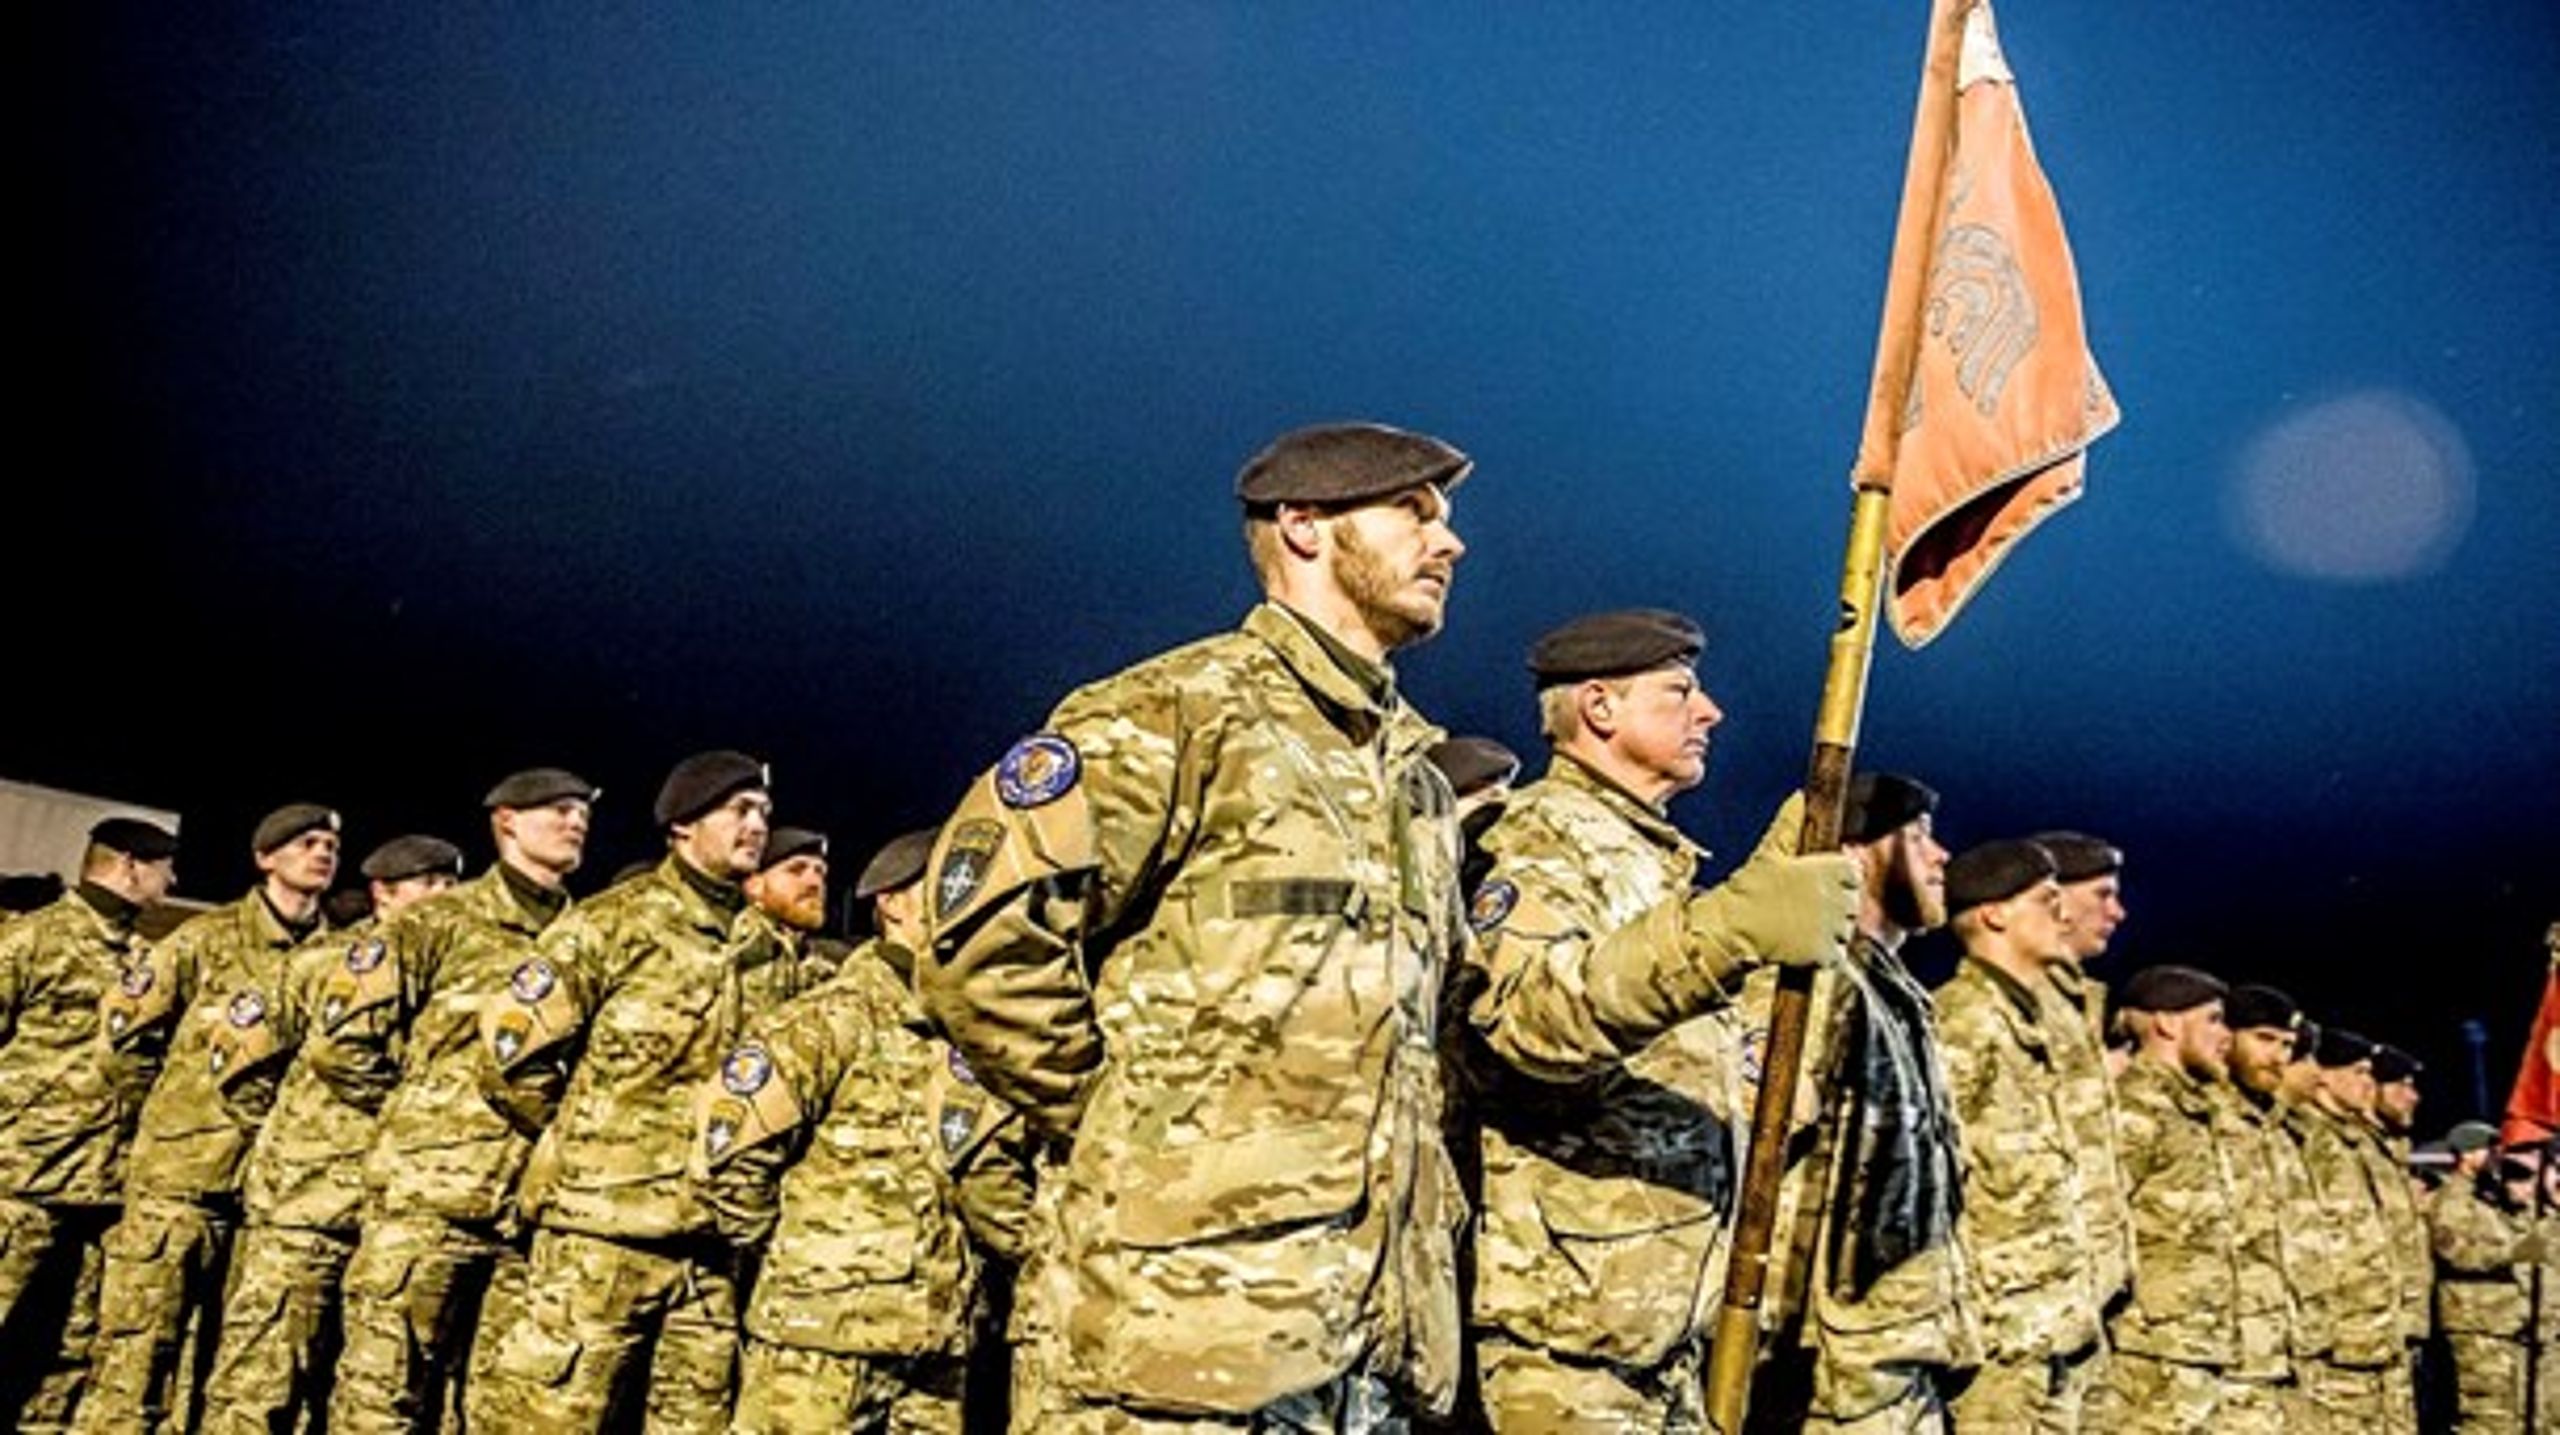 En dansk kampgruppe er i øjeblikket udsendt til Estland som led i Nato's&nbsp;Enhanced Forward Presence-mission, der skal vise Rusland, at Nato er tilstede i Baltikum.&nbsp;<br>